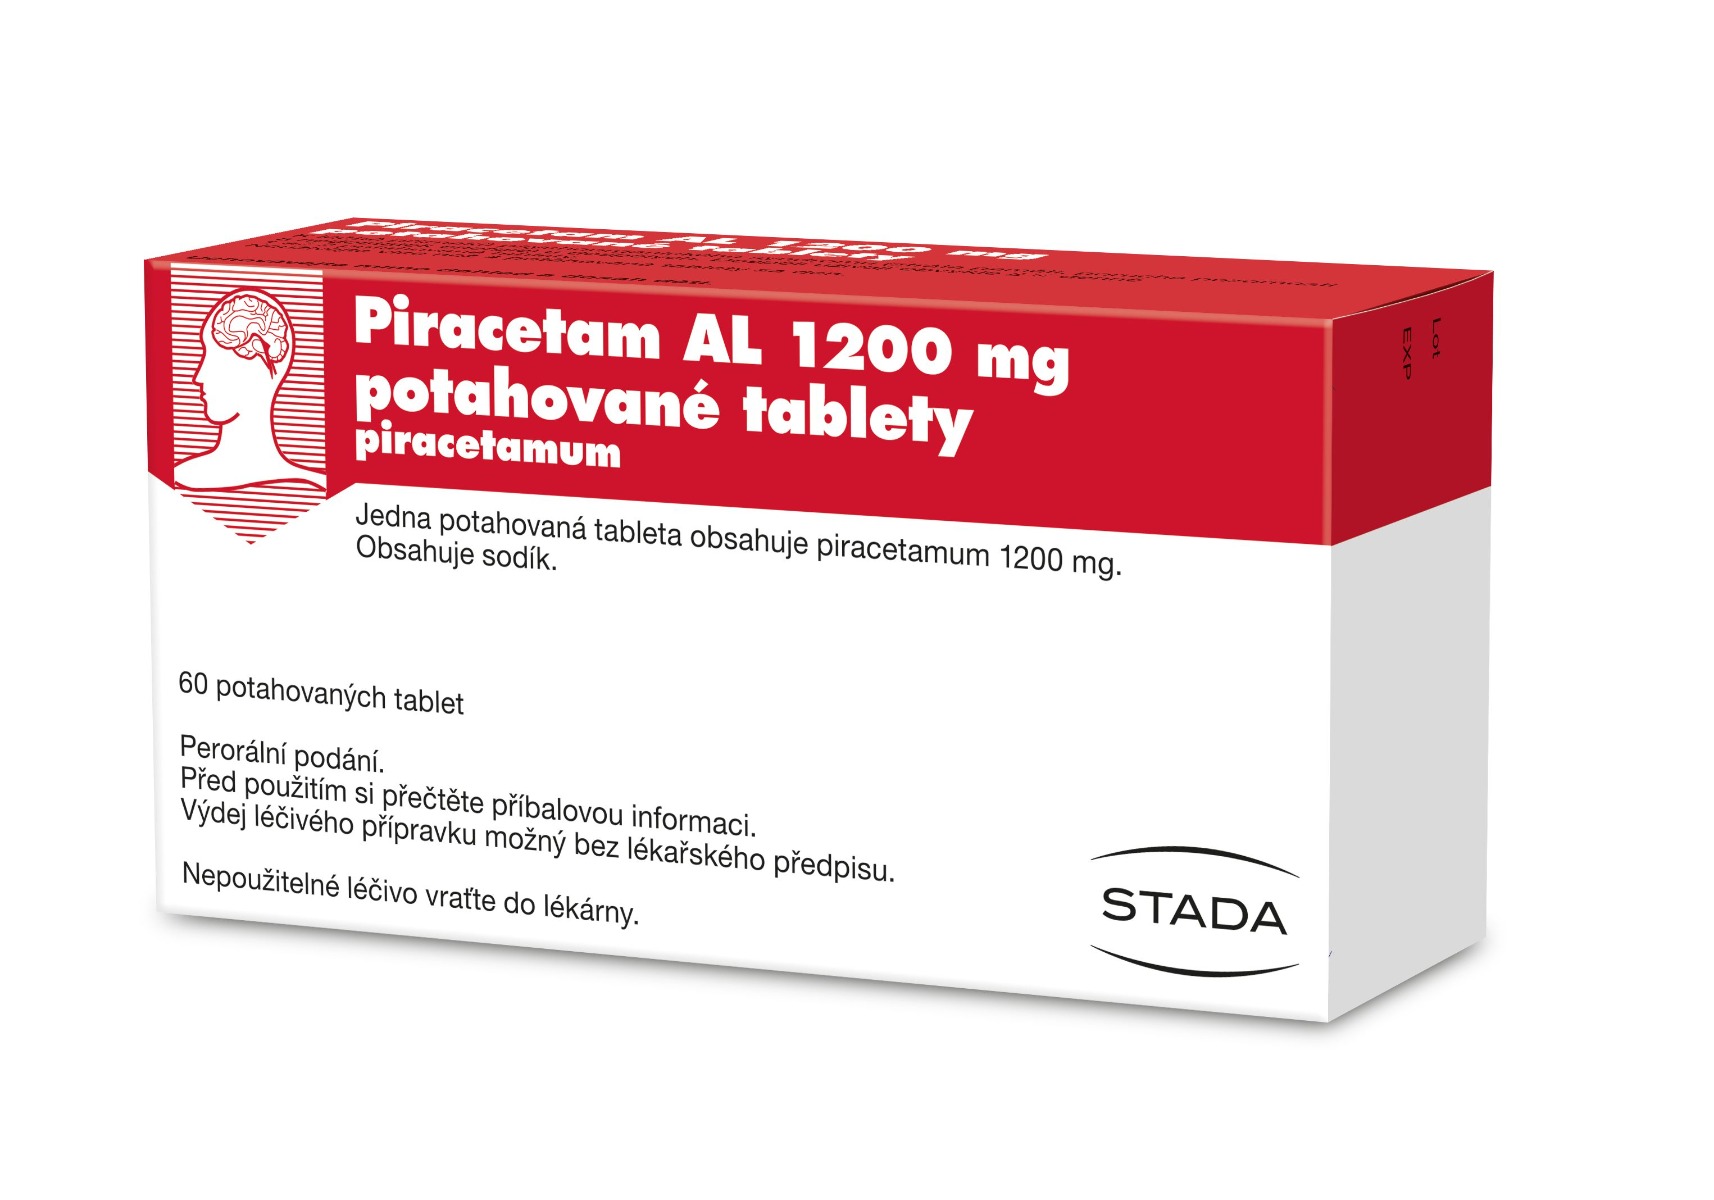 Piracetam AL 1200 mg 60 potahovaných tablet Piracetam